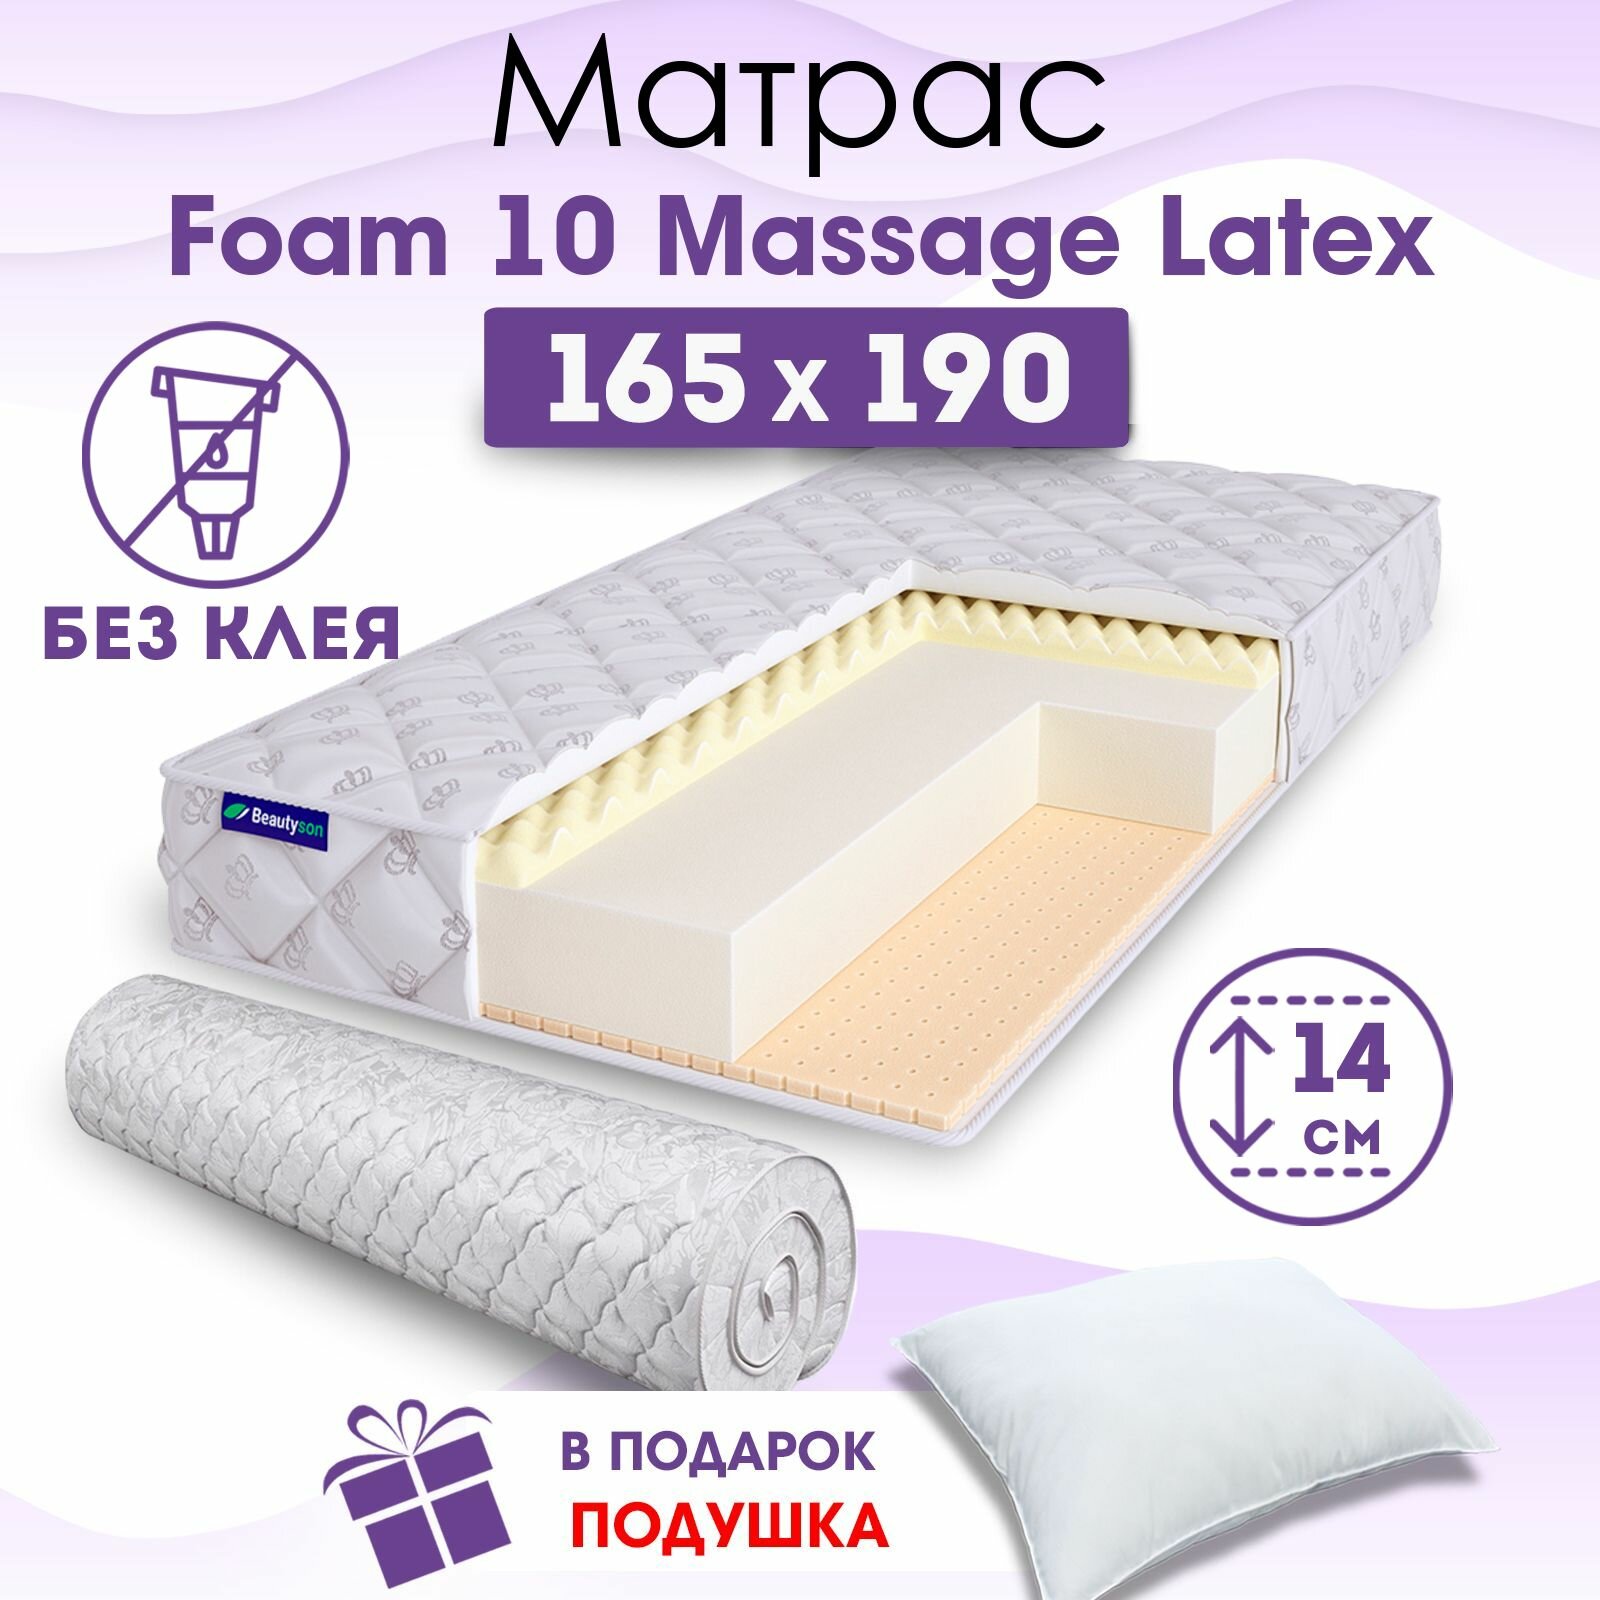 Ортопедический матрас Beautyson Foam 10 Massage Latex без клея, 165х190, 14 см, беспружинный, двухспальный, на кровать, для дивана, мягкий, не высокий